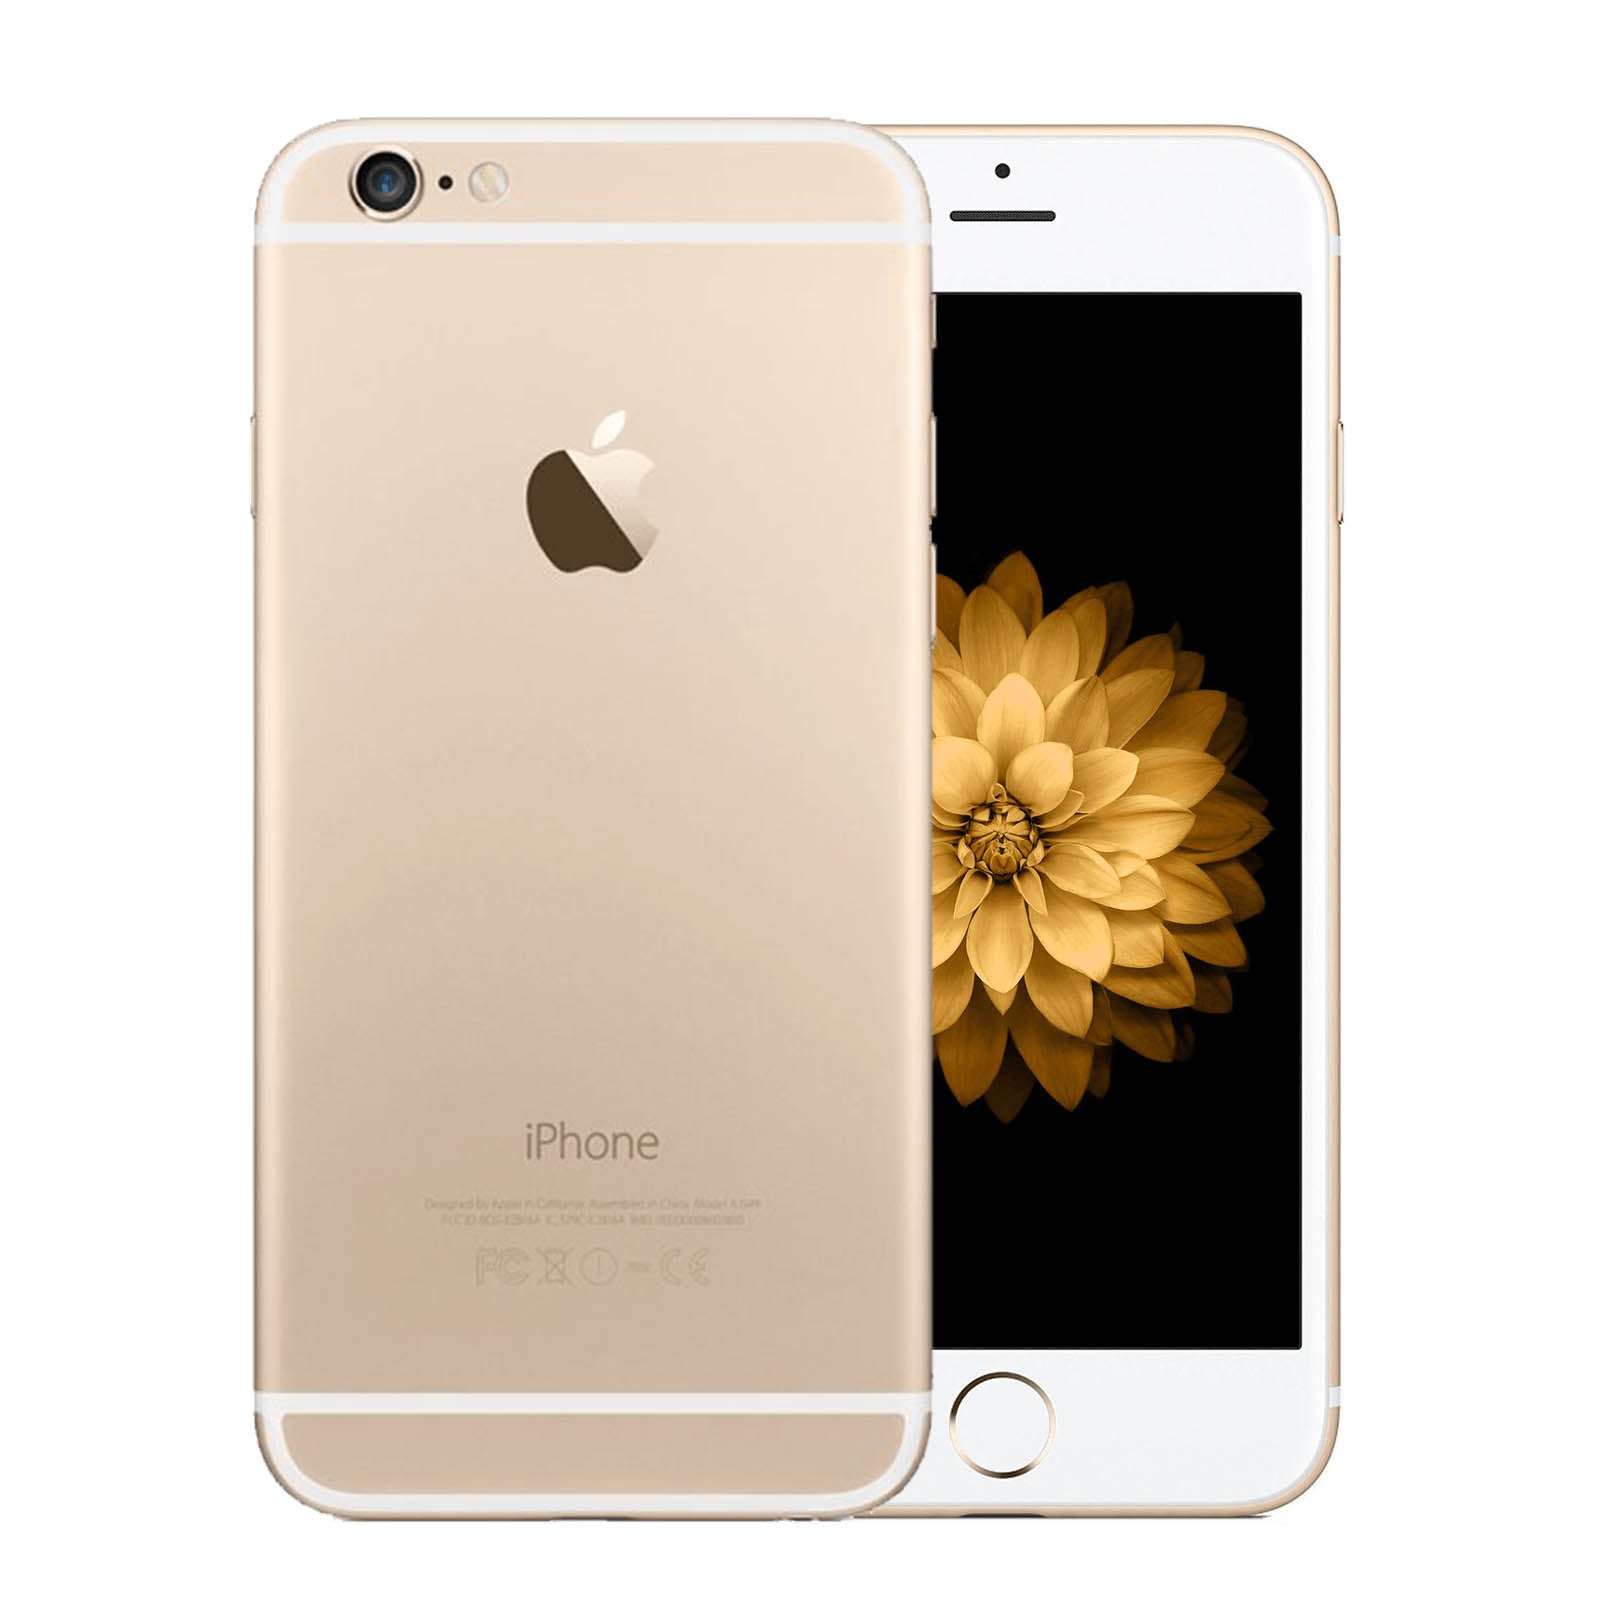 Apple iPhone 6 Gold au 16gb - スマートフォン本体